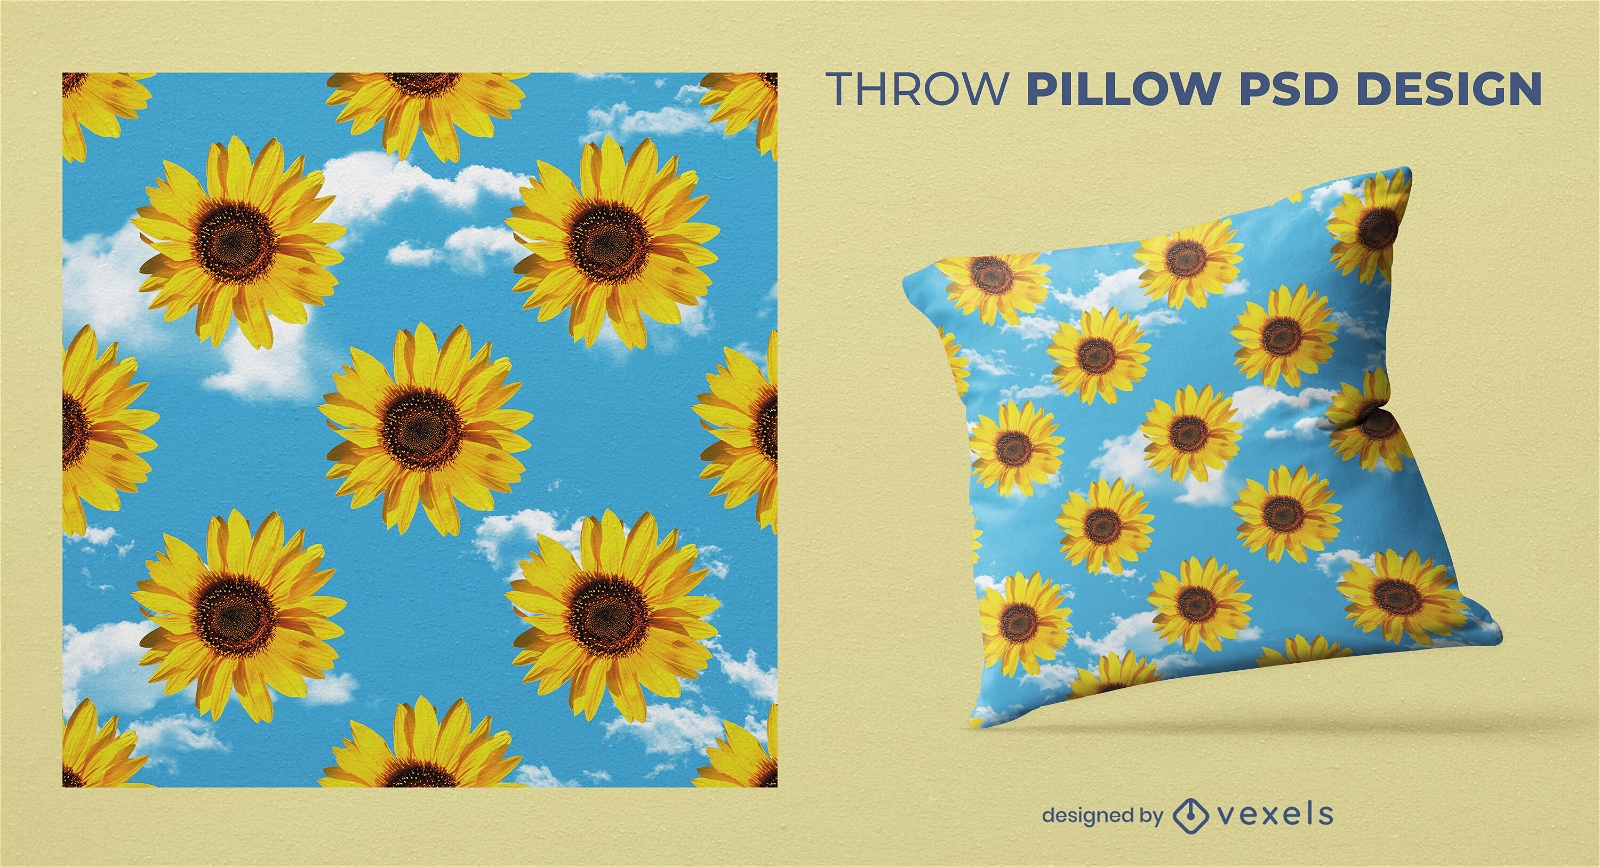 Sunflowers pattern throw pillow design